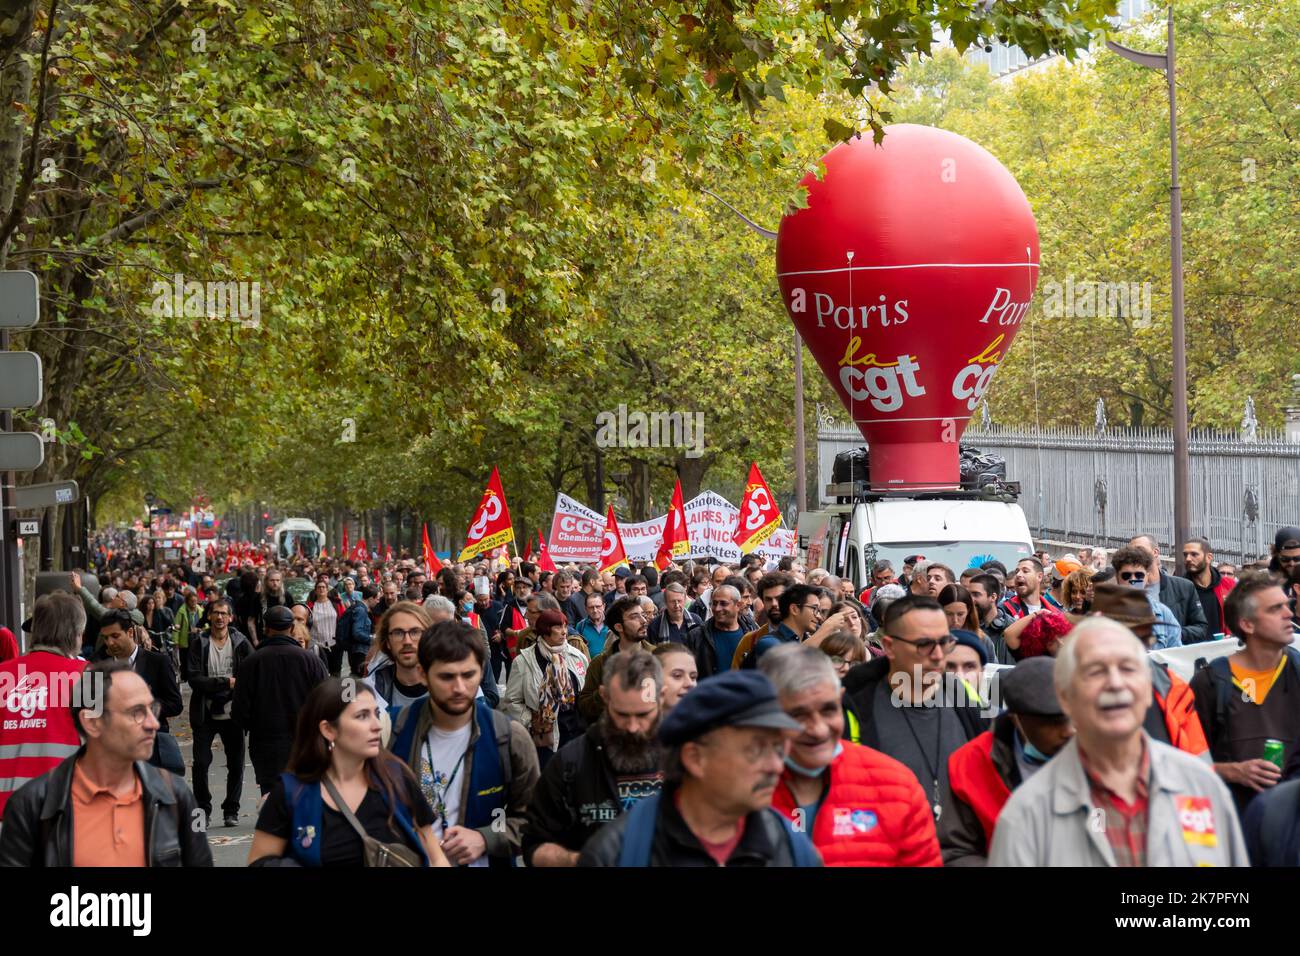 Des militants de la CGT (Confédération générale du travail), un syndicat français, défilent lors d'une manifestation de protestation Banque D'Images